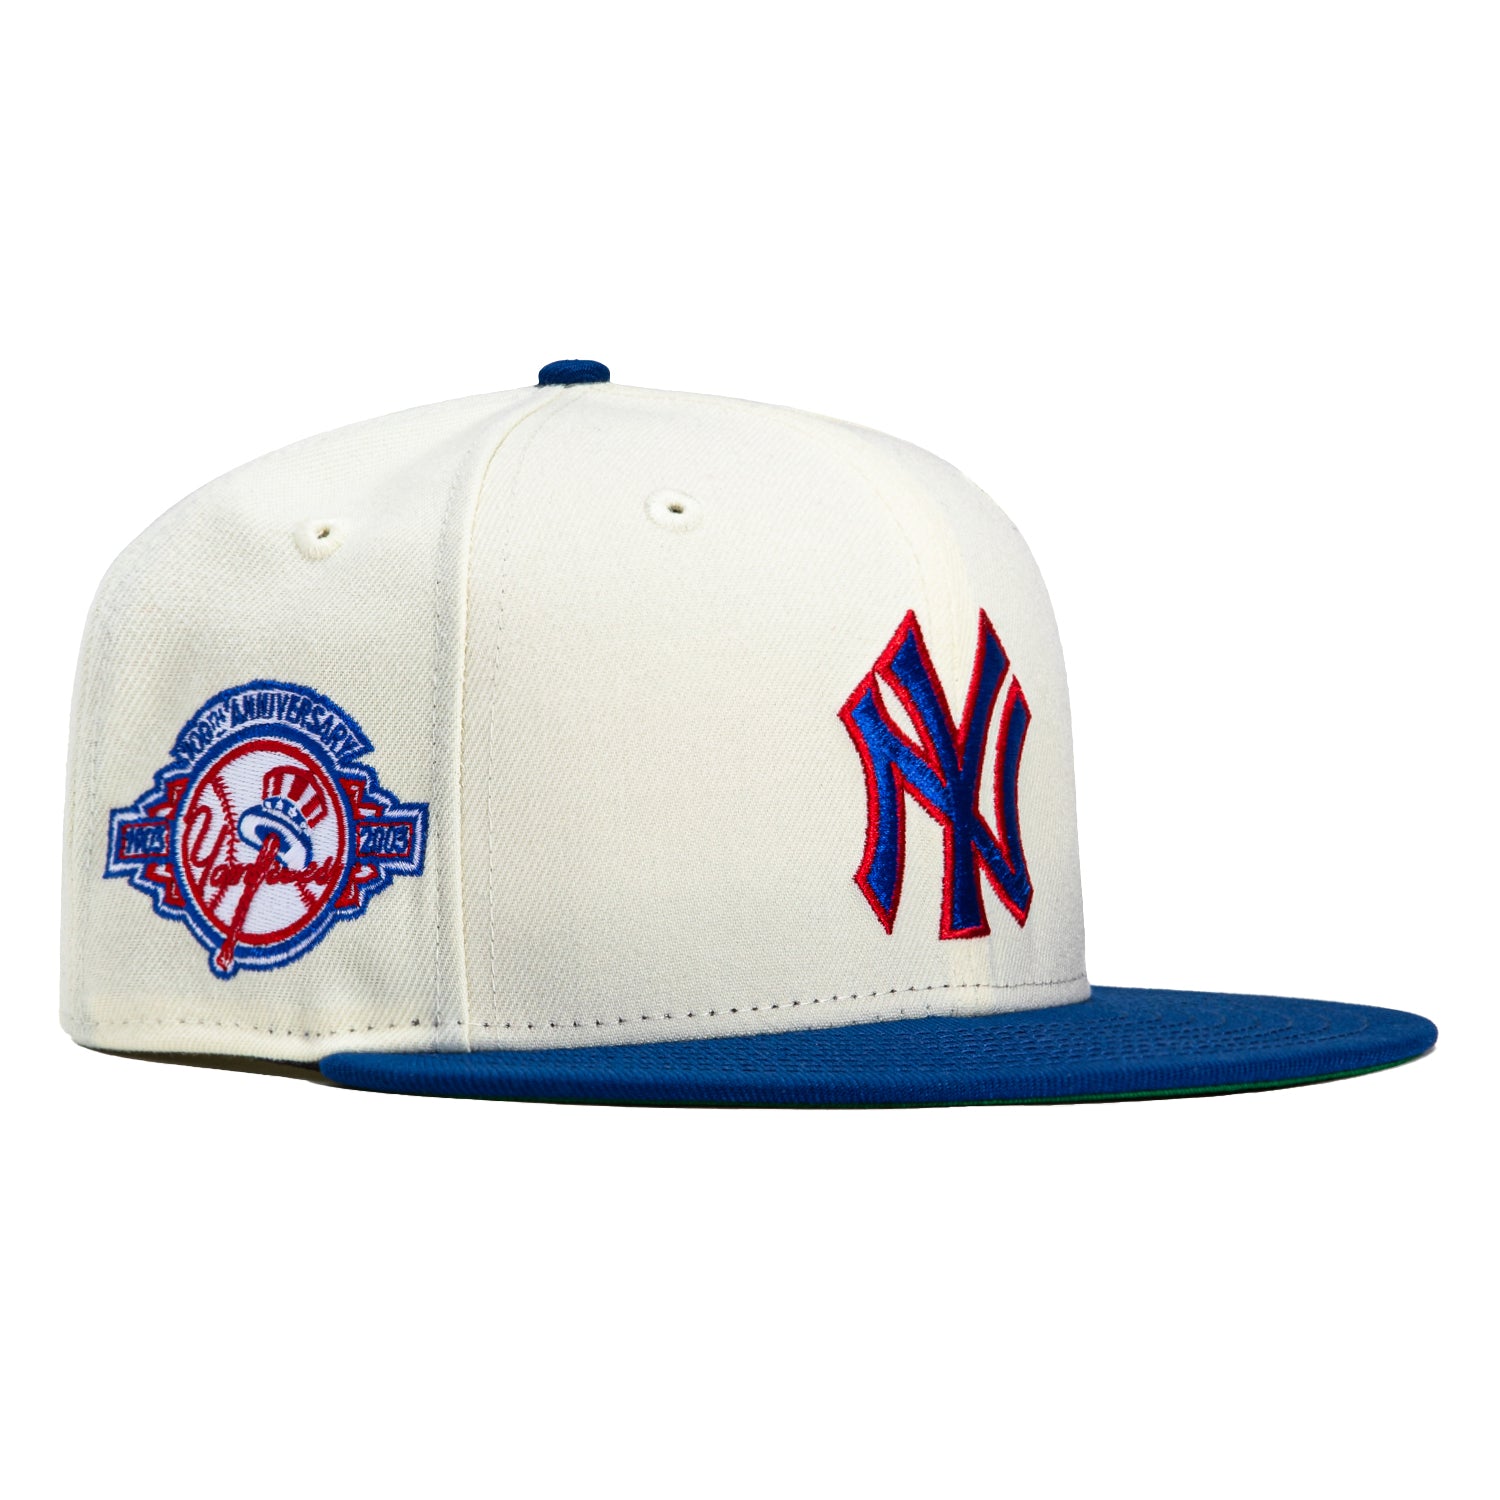 New Era Cap MLB NY Yankees Kelly Green | White Pinstripes 59FIFTY